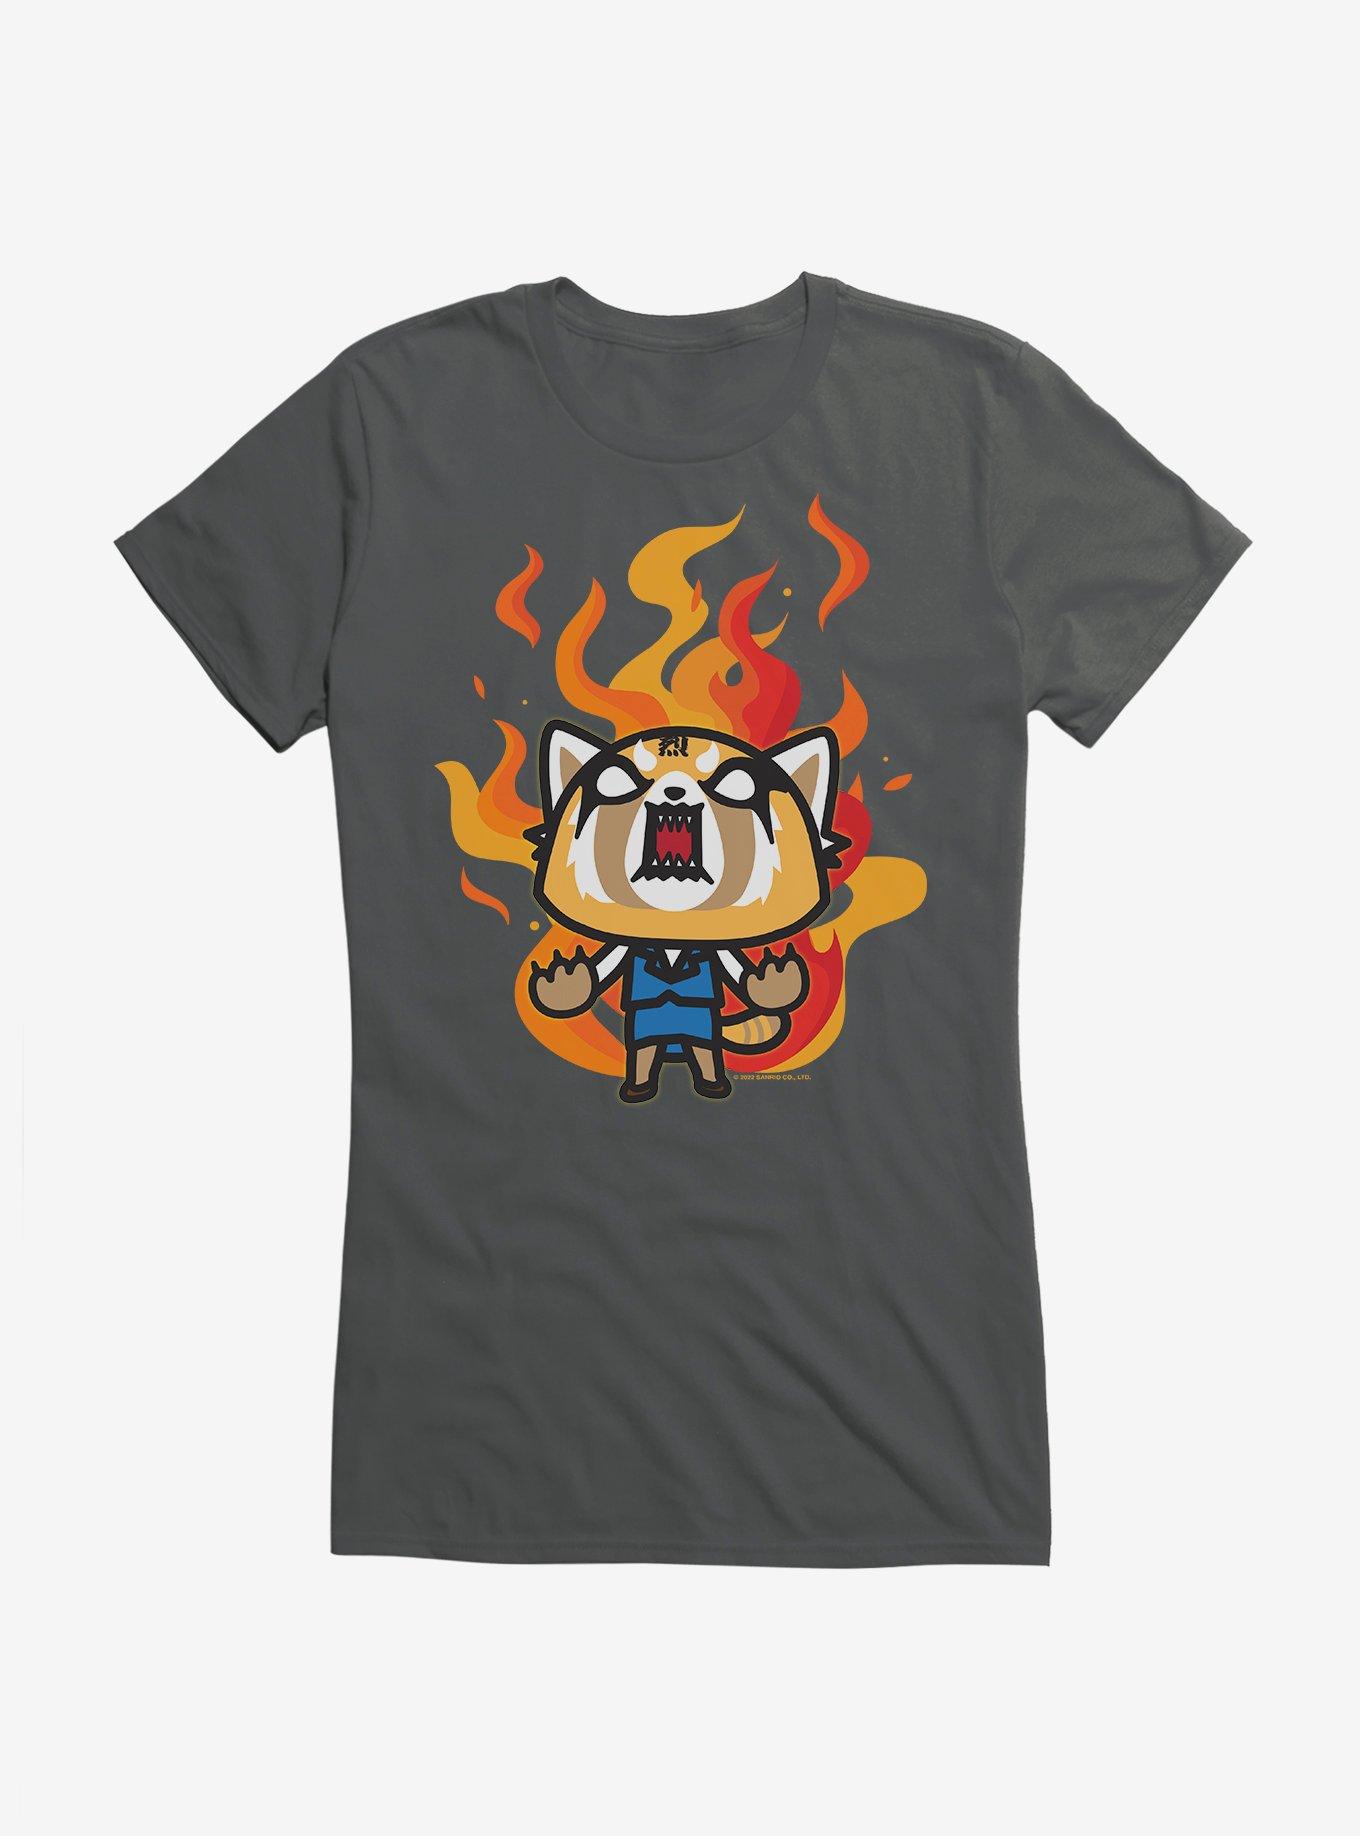 Aggretsuko Metal Rage Girls T-Shirt